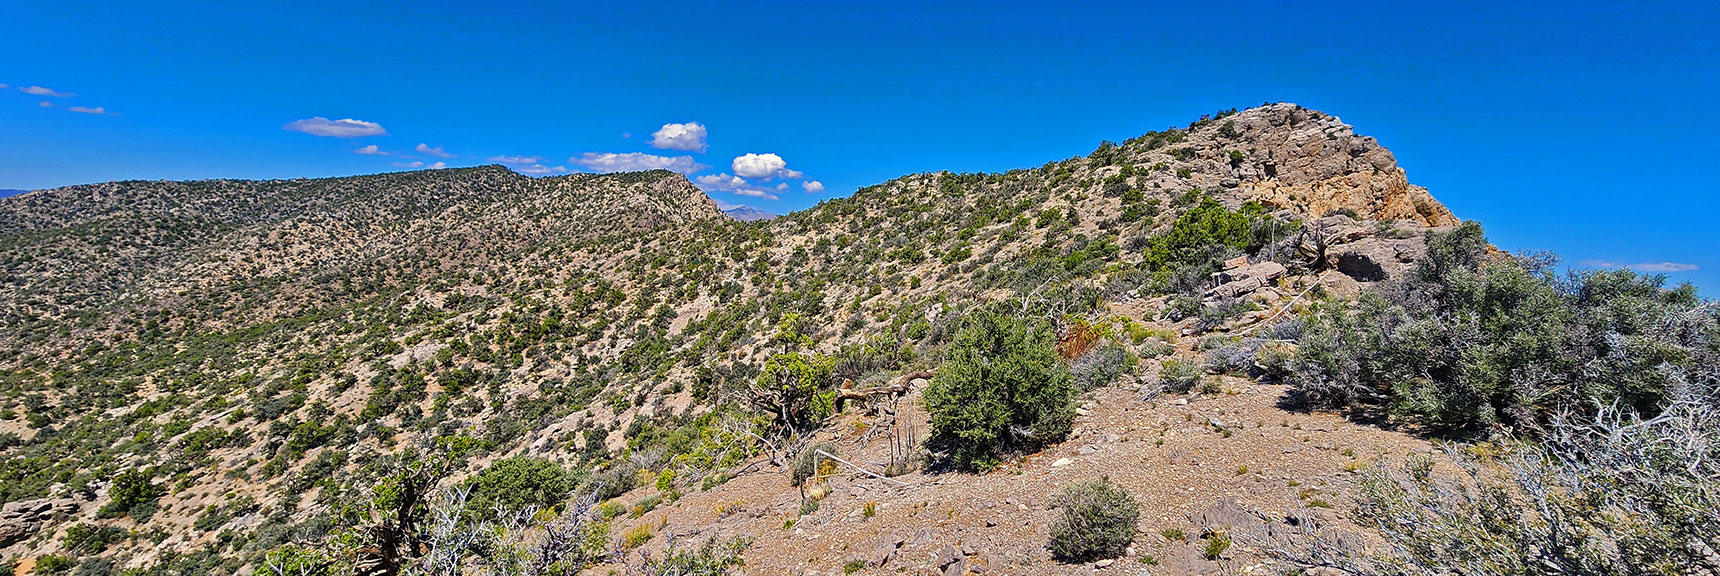 First Ridgeline High Point to North is First Creek Overlook Cliff. | Mt Wilson to Juniper Peak | Rainbow Mountains Upper Crest Ridgeline | Rainbow Mountain Wilderness, Nevada